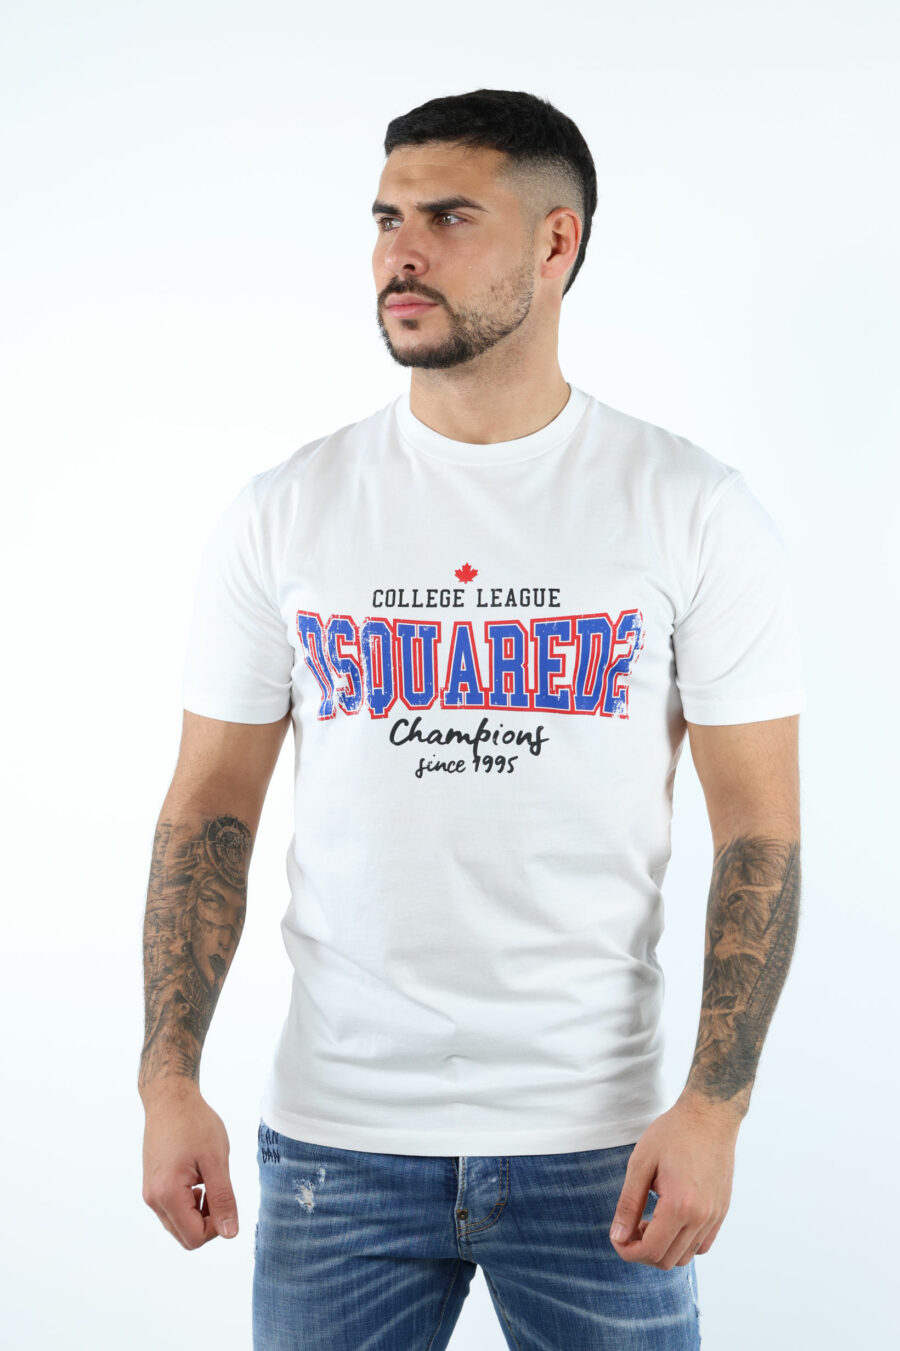 Camiseta blanca con maxilogo "collegue league" - 106628